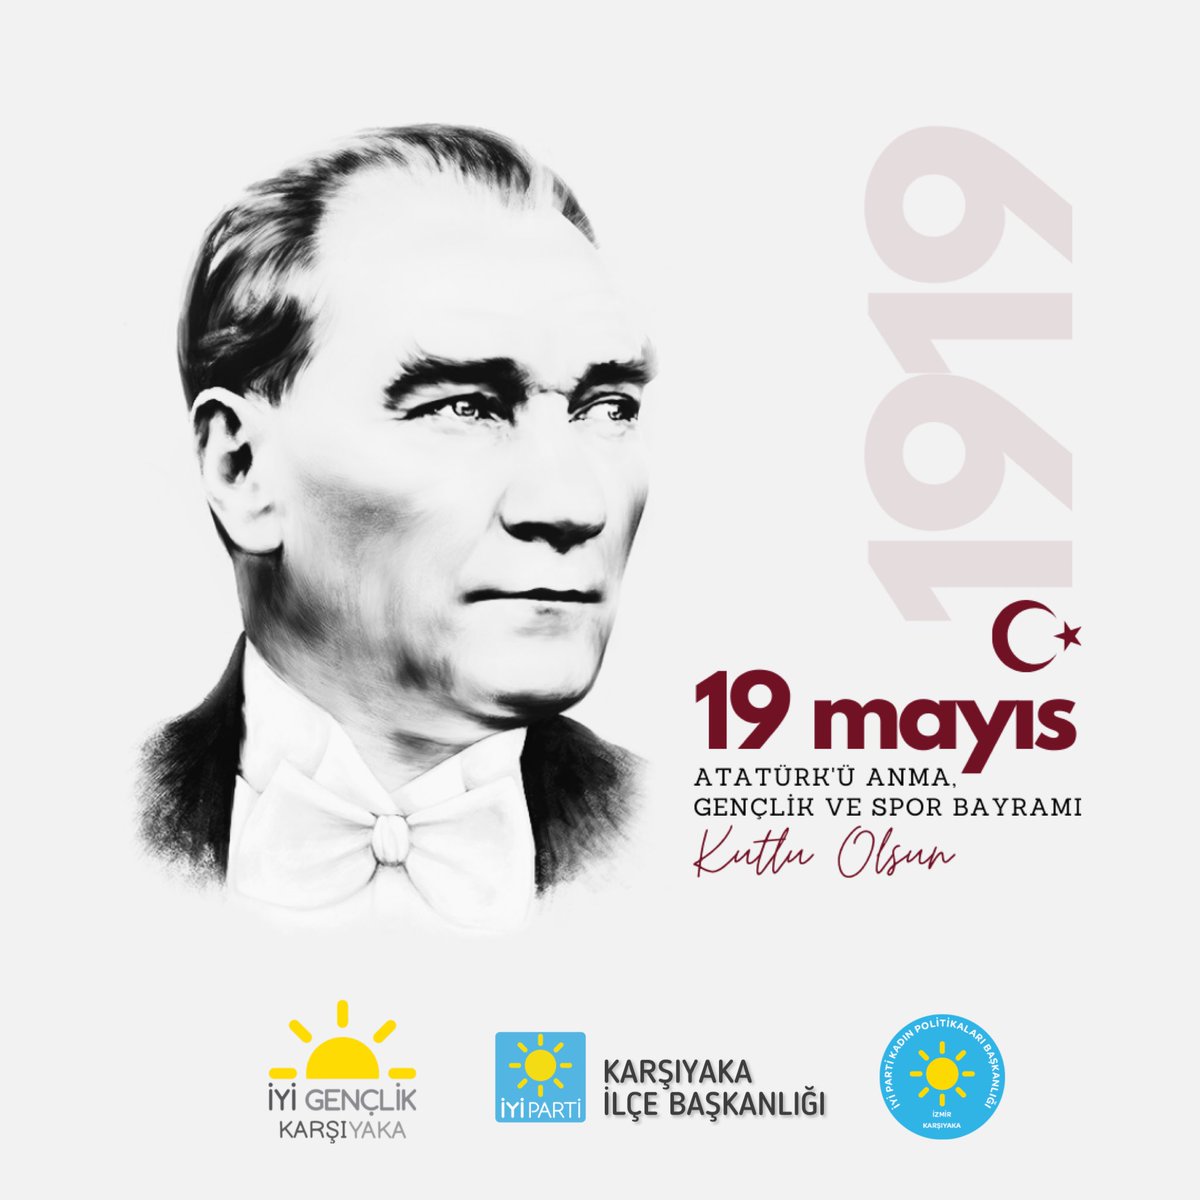 #19Mayıs1919’da Samsun’a ulaşan Bandırma Vapuru, Türk milletinin bağımsızlık ateşi olmuştur. 105 yıldır aynı heyecanla harlanan o ateş, Atamızın emanet ettiği, Cumhuriyetimizin bekçileri gençlerimiz ile birlikte hiç sönmeyecek ! #Yeniden19MayısRuhuyla